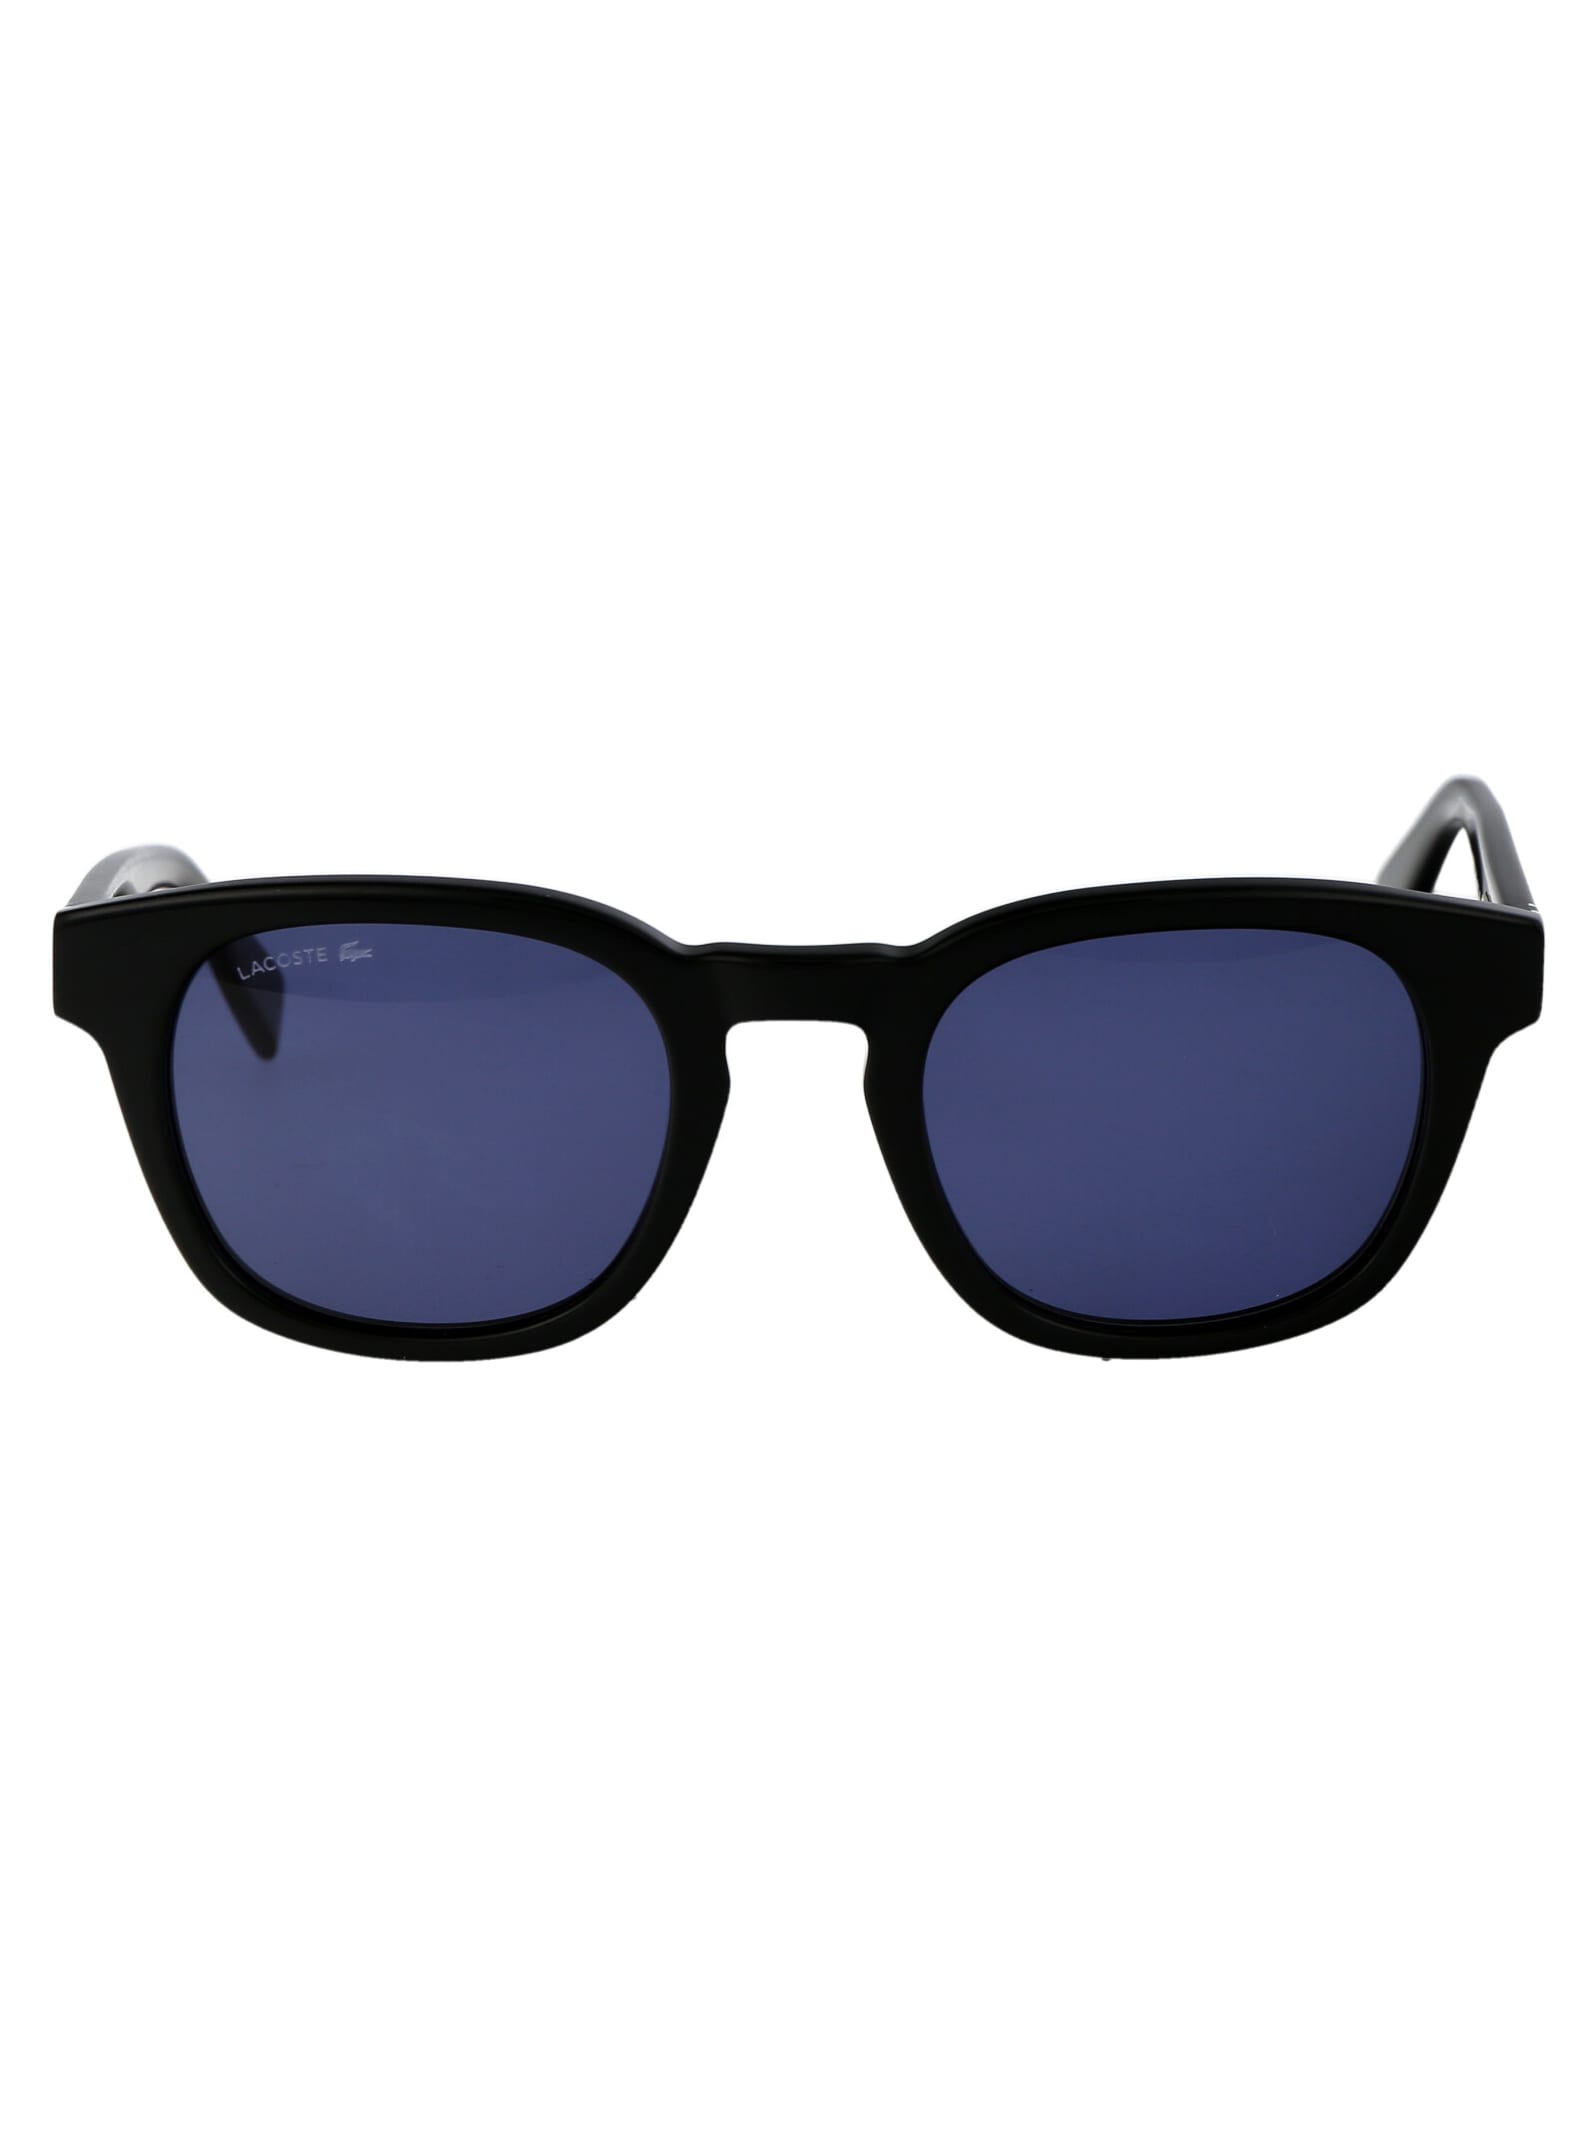 L6015s Sunglasses